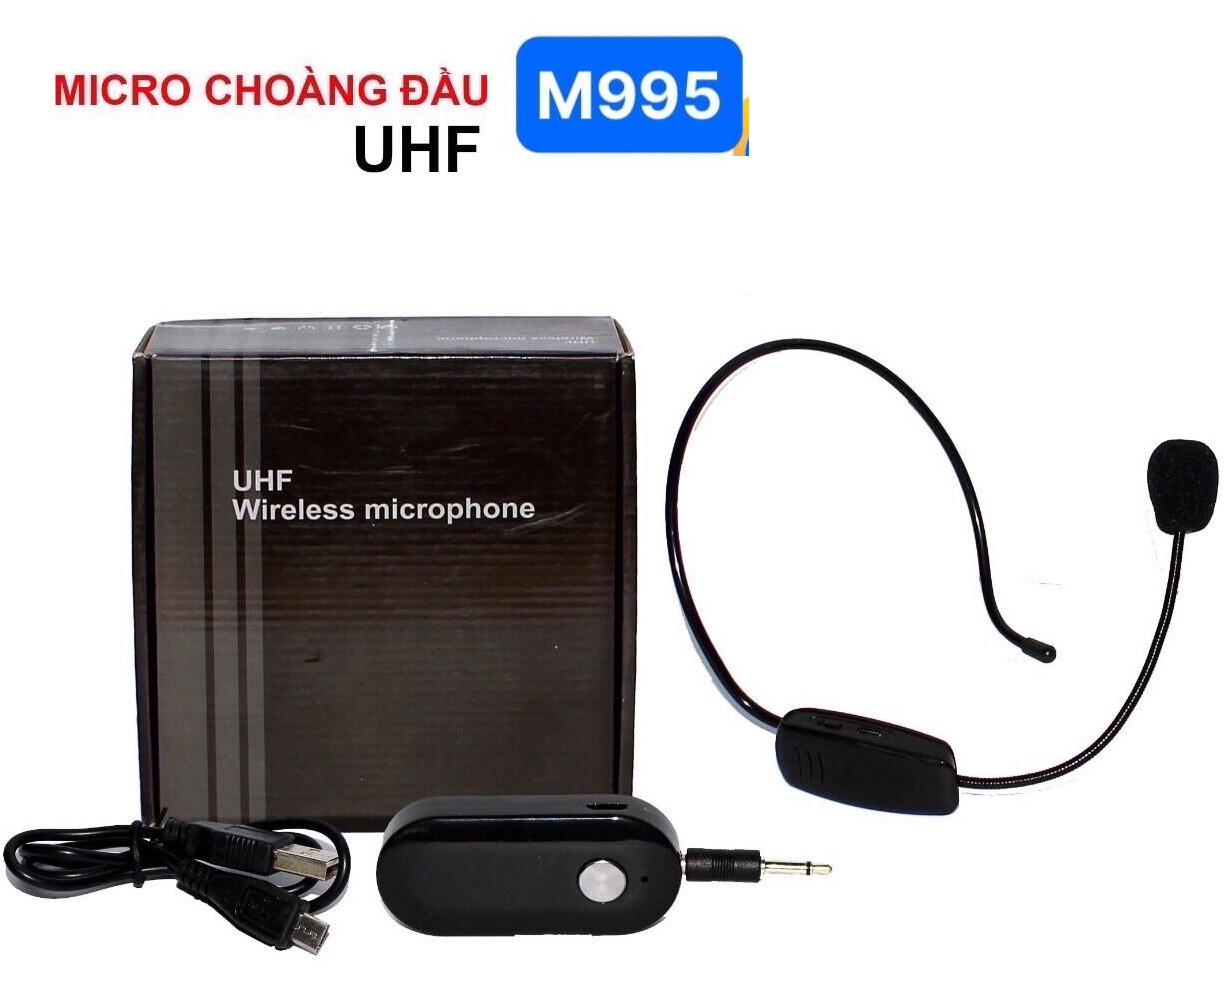 Micro choàng đầu M995 sóng UHF